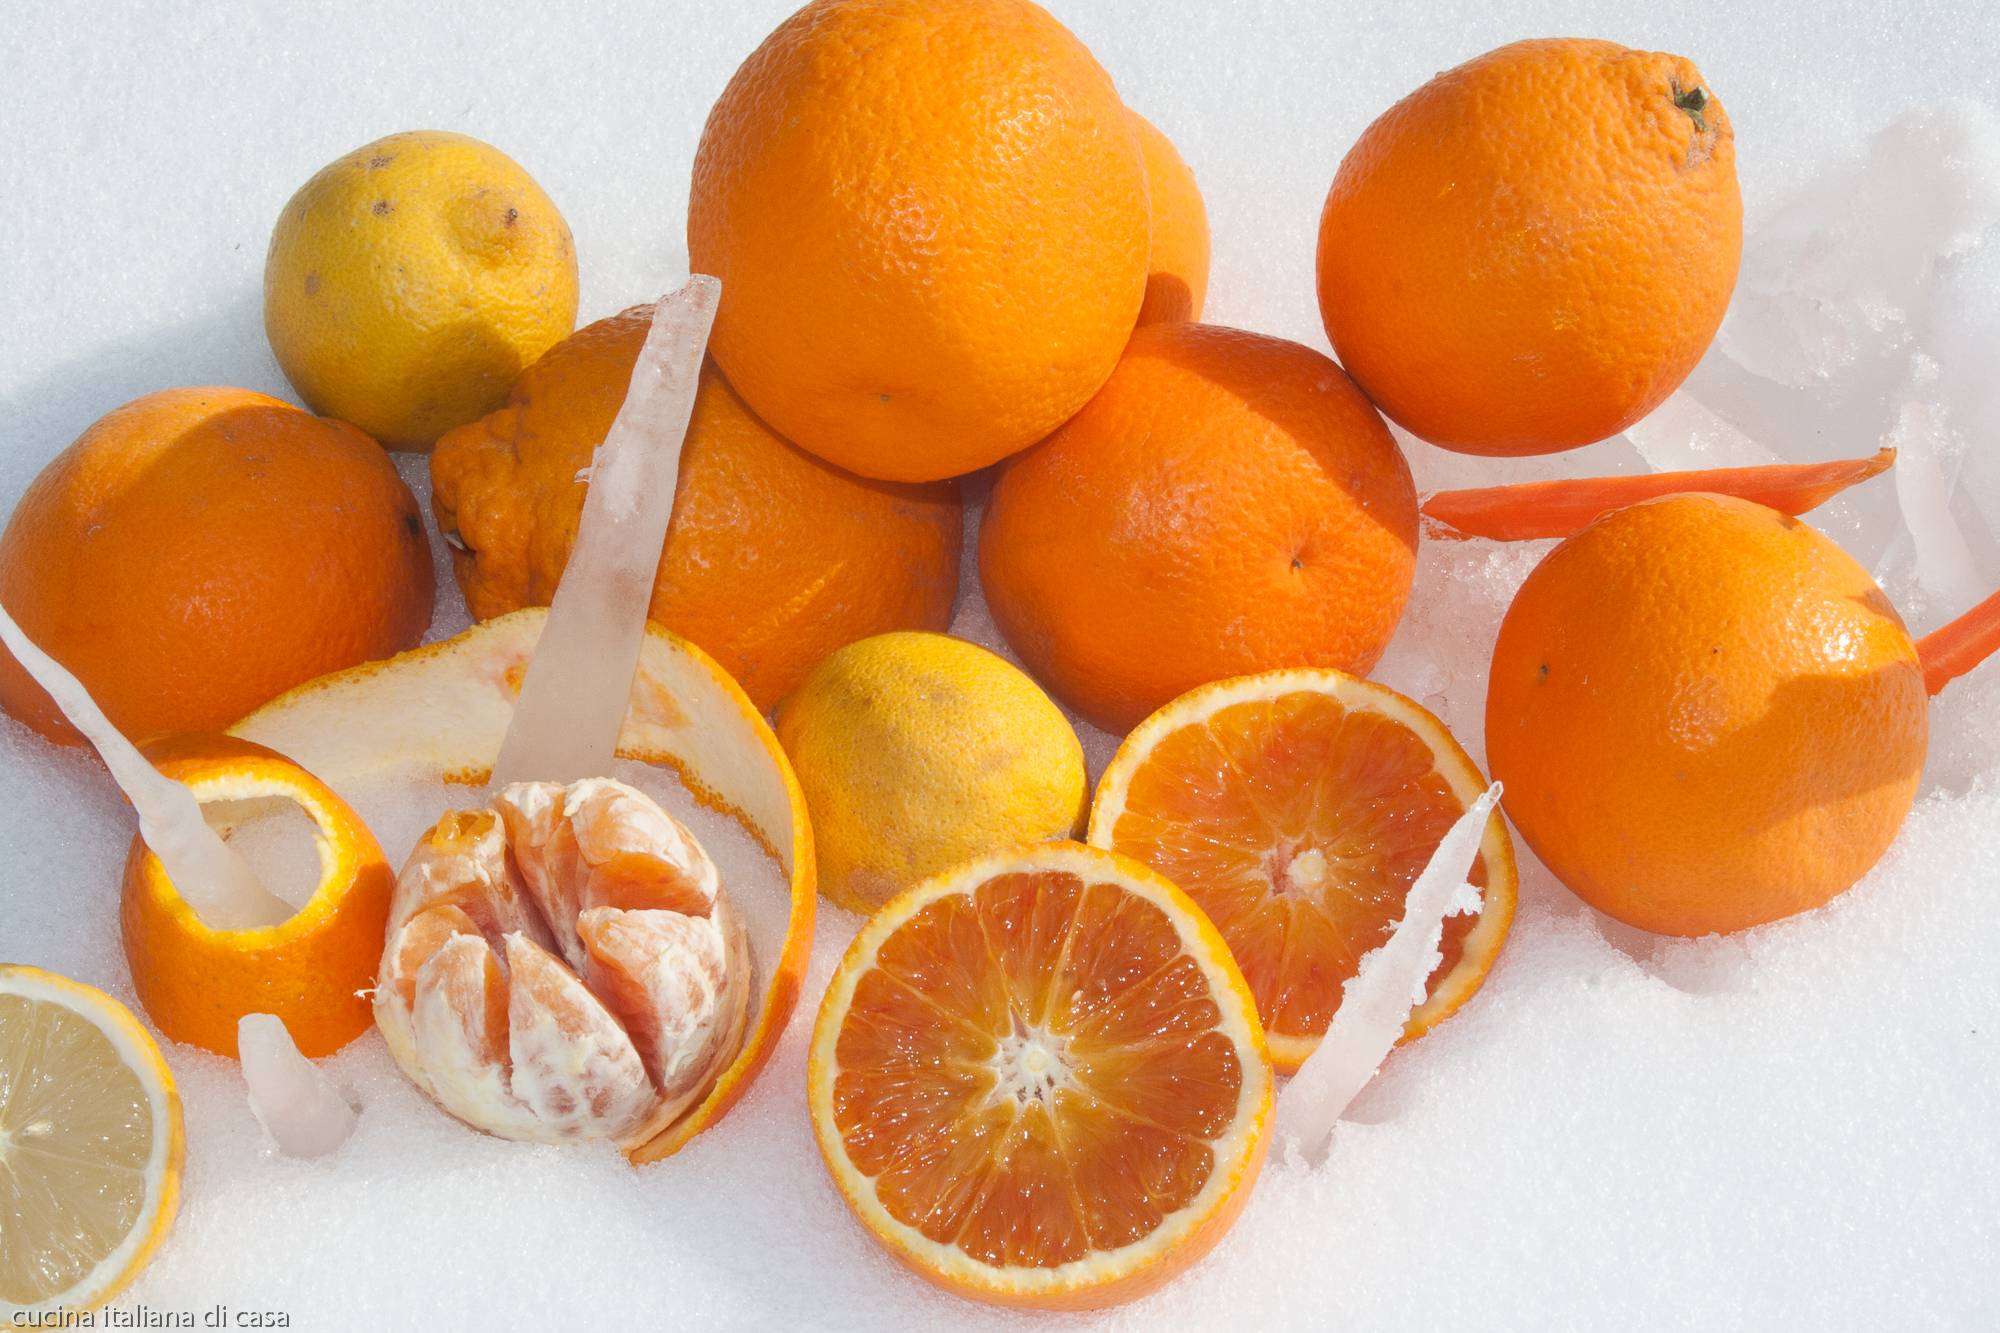 vitamine calorie usi in cucina arance